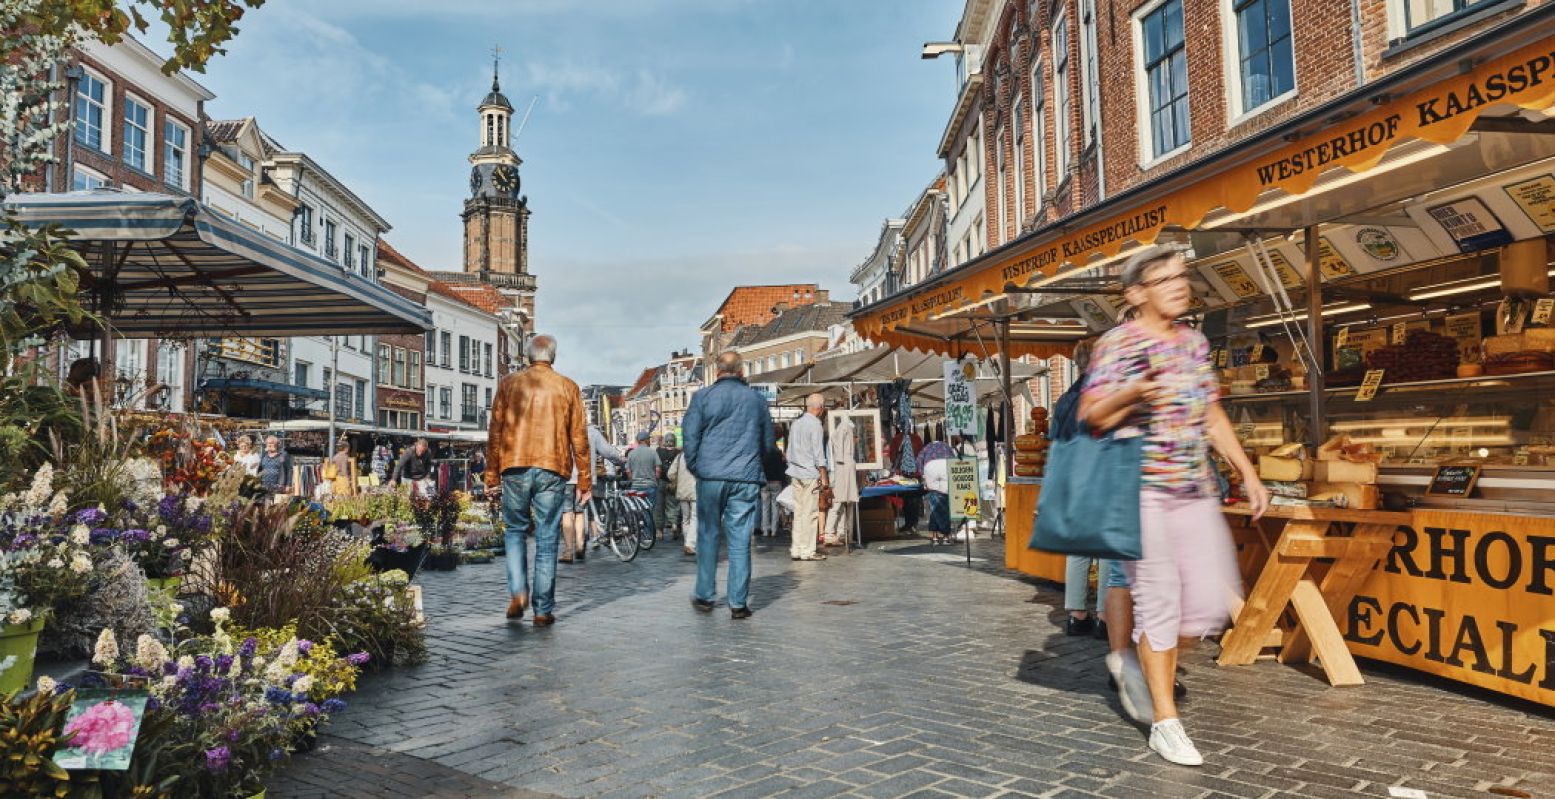 Op donderdag is het markt in het centrum van Zutphen. Zie je de Wijnhuistoren? Die kun je gratis beklimmen. Foto: InZutphen